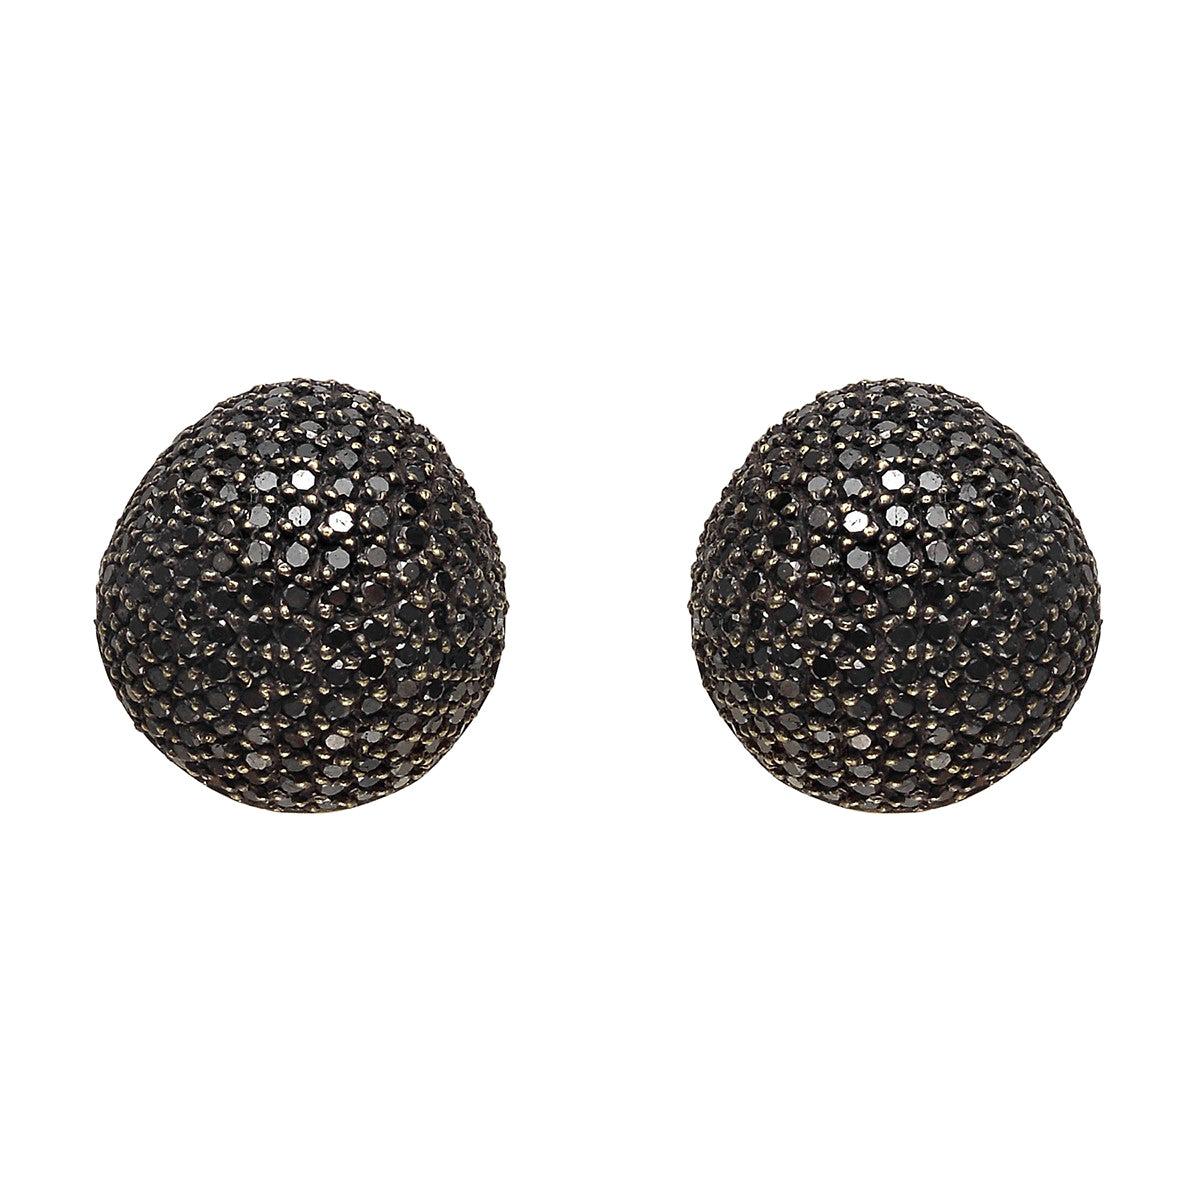 Yossi Harari Black Diamond Dome Earrings For Sale